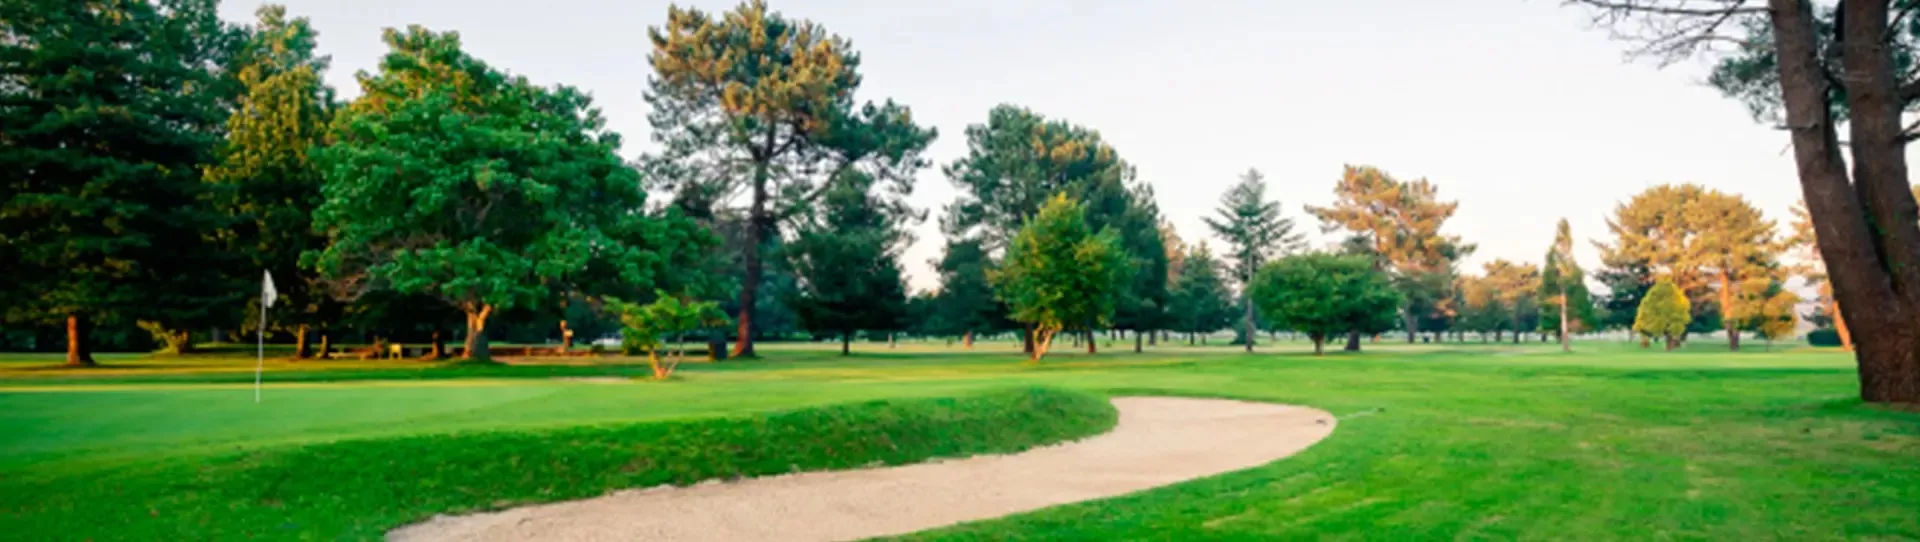 Spain golf courses - Real Aero Club de Vigo Golf Course - Photo 2